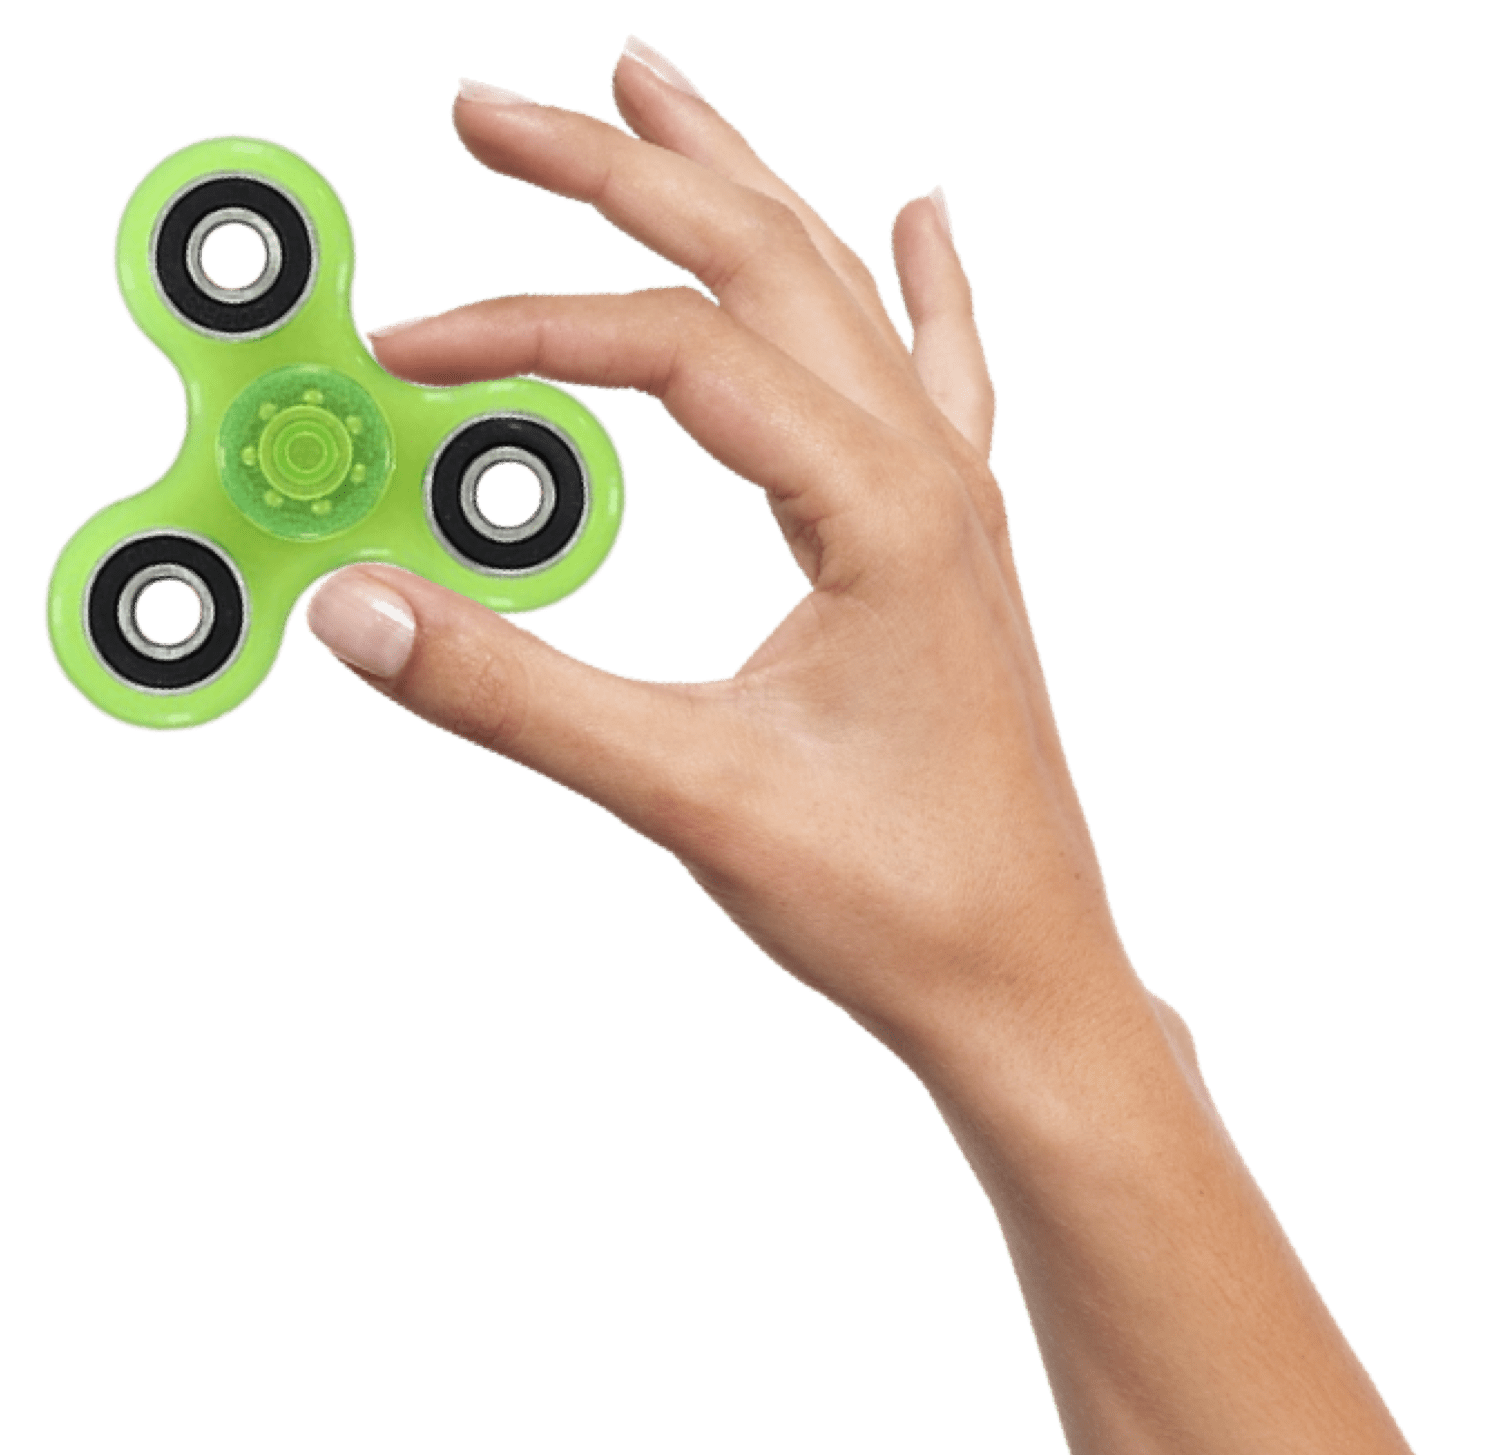 2Pcs Caps For Spinner Fidget Toy EDC Hand Finger Spinner Desk Focus Hot Gift 